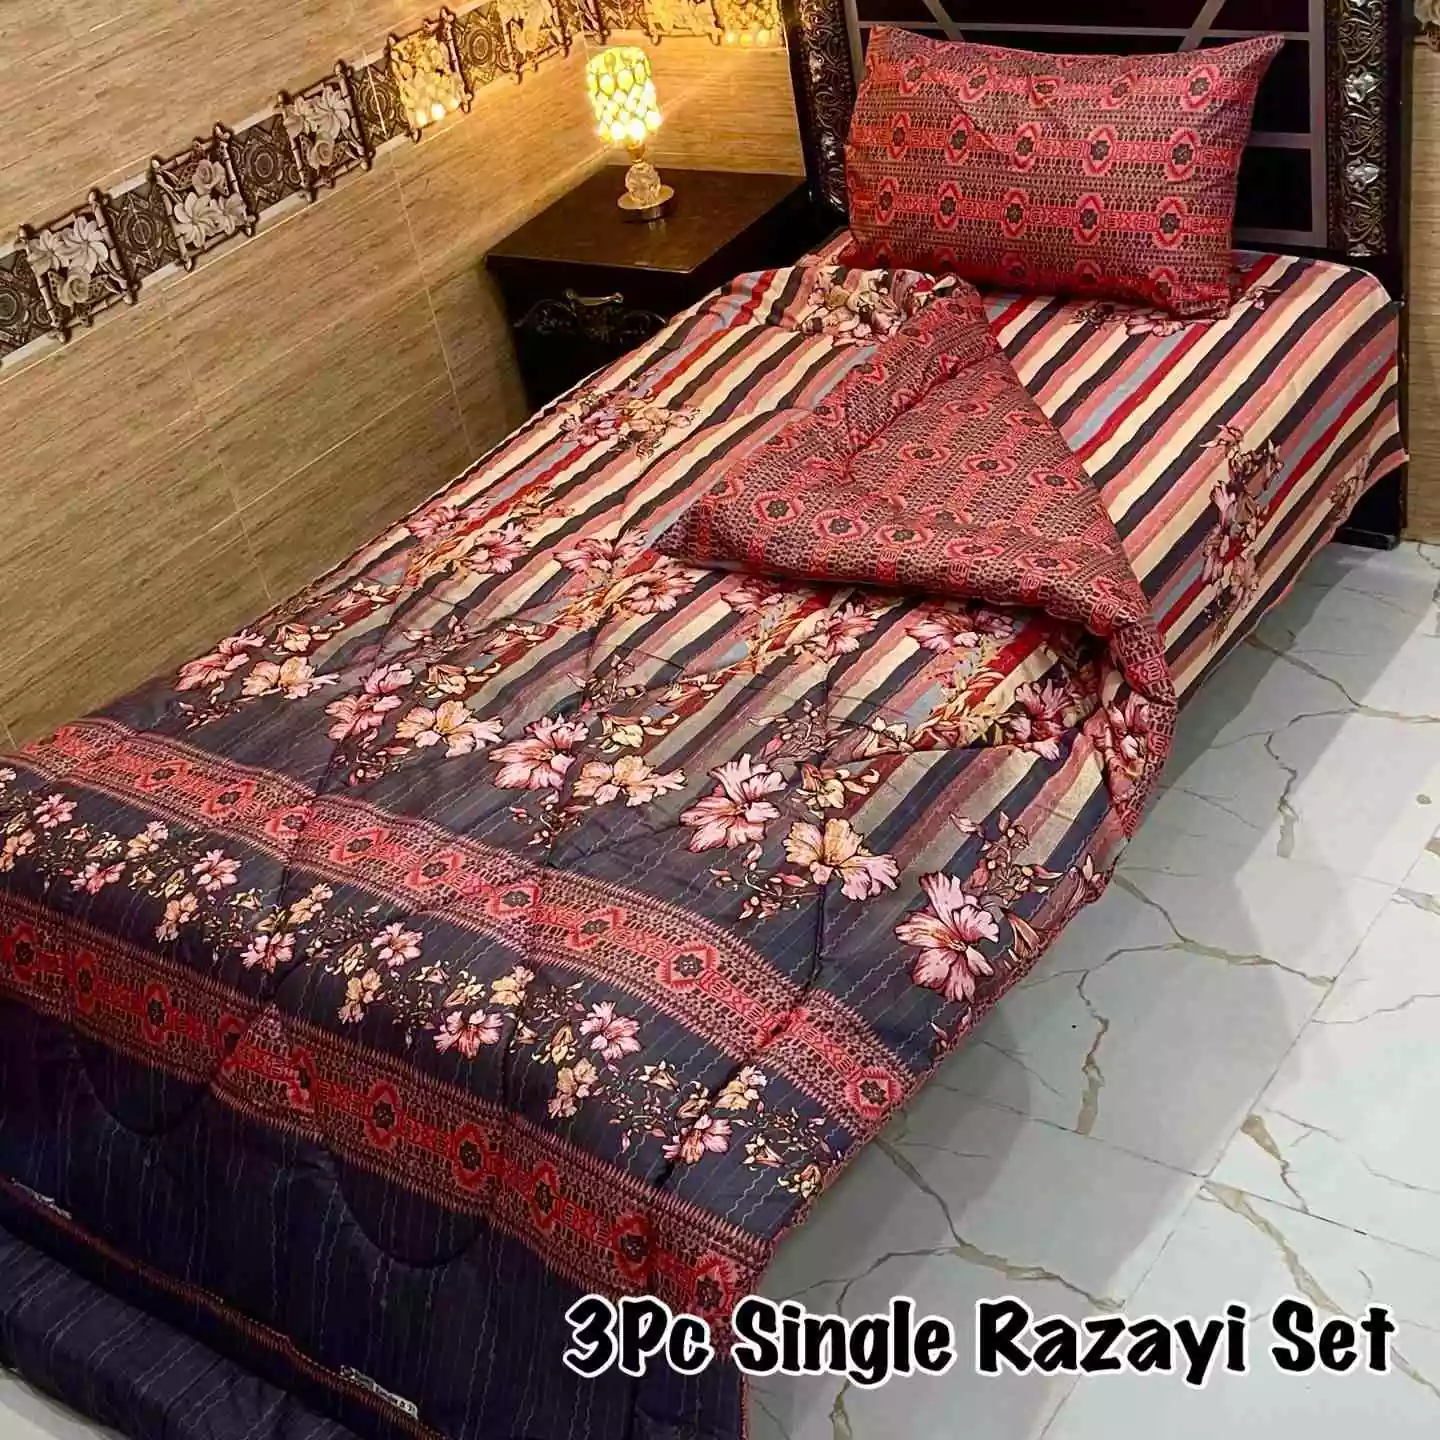 DF-VRSSB-10: DFY 3Pc Single Bed Vicky Razai Set